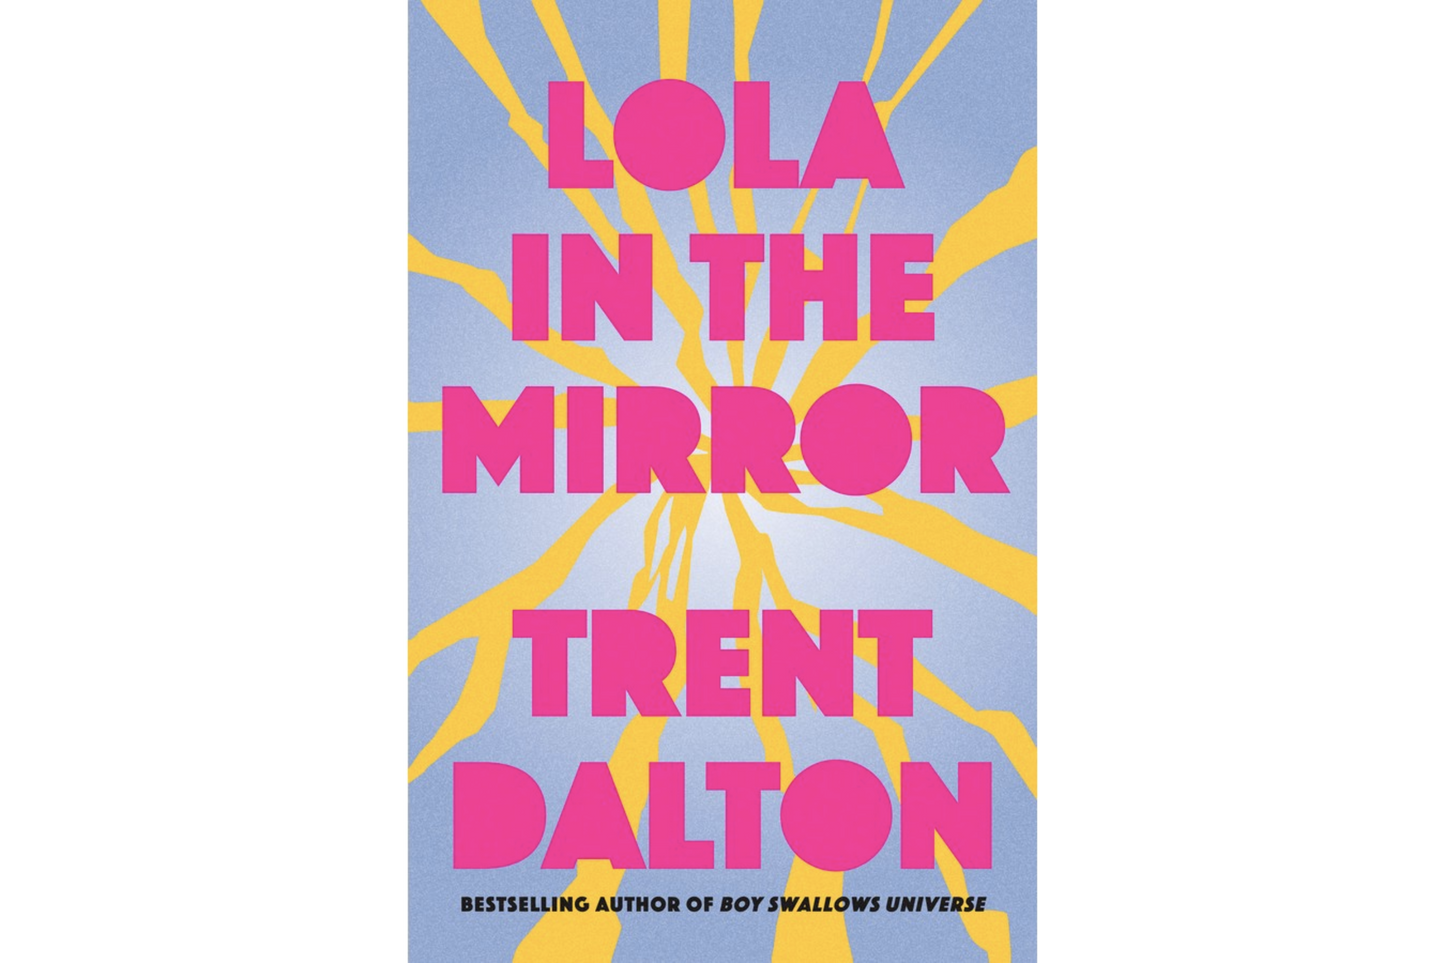 Lola in the Mirror (Trent Dalton)